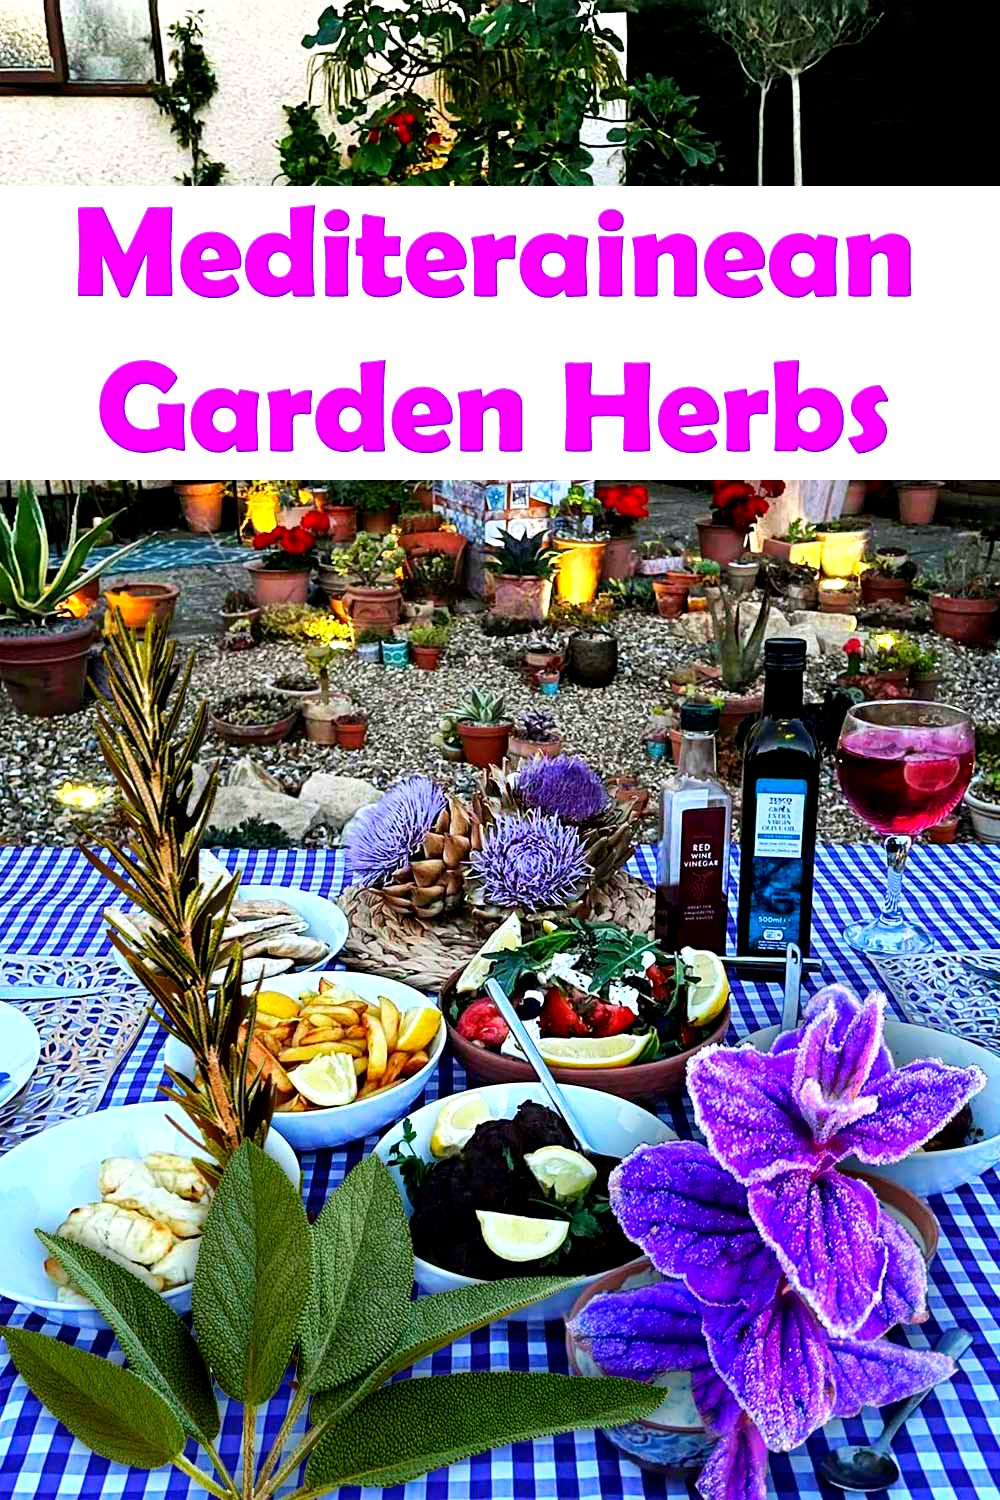 Mediterranean garden herbs